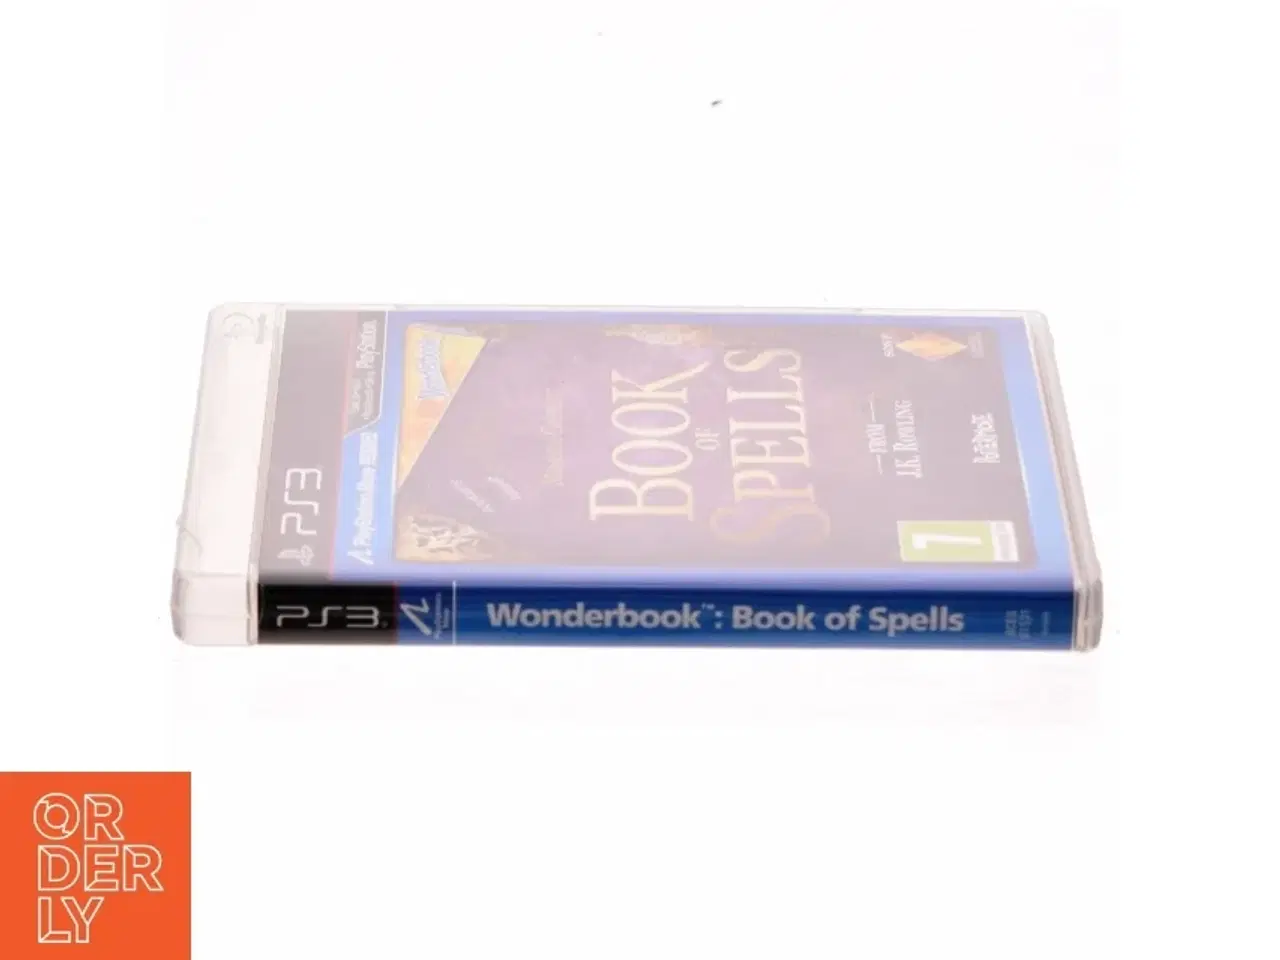 Billede 2 - PS3, Book of spells fra Playstation